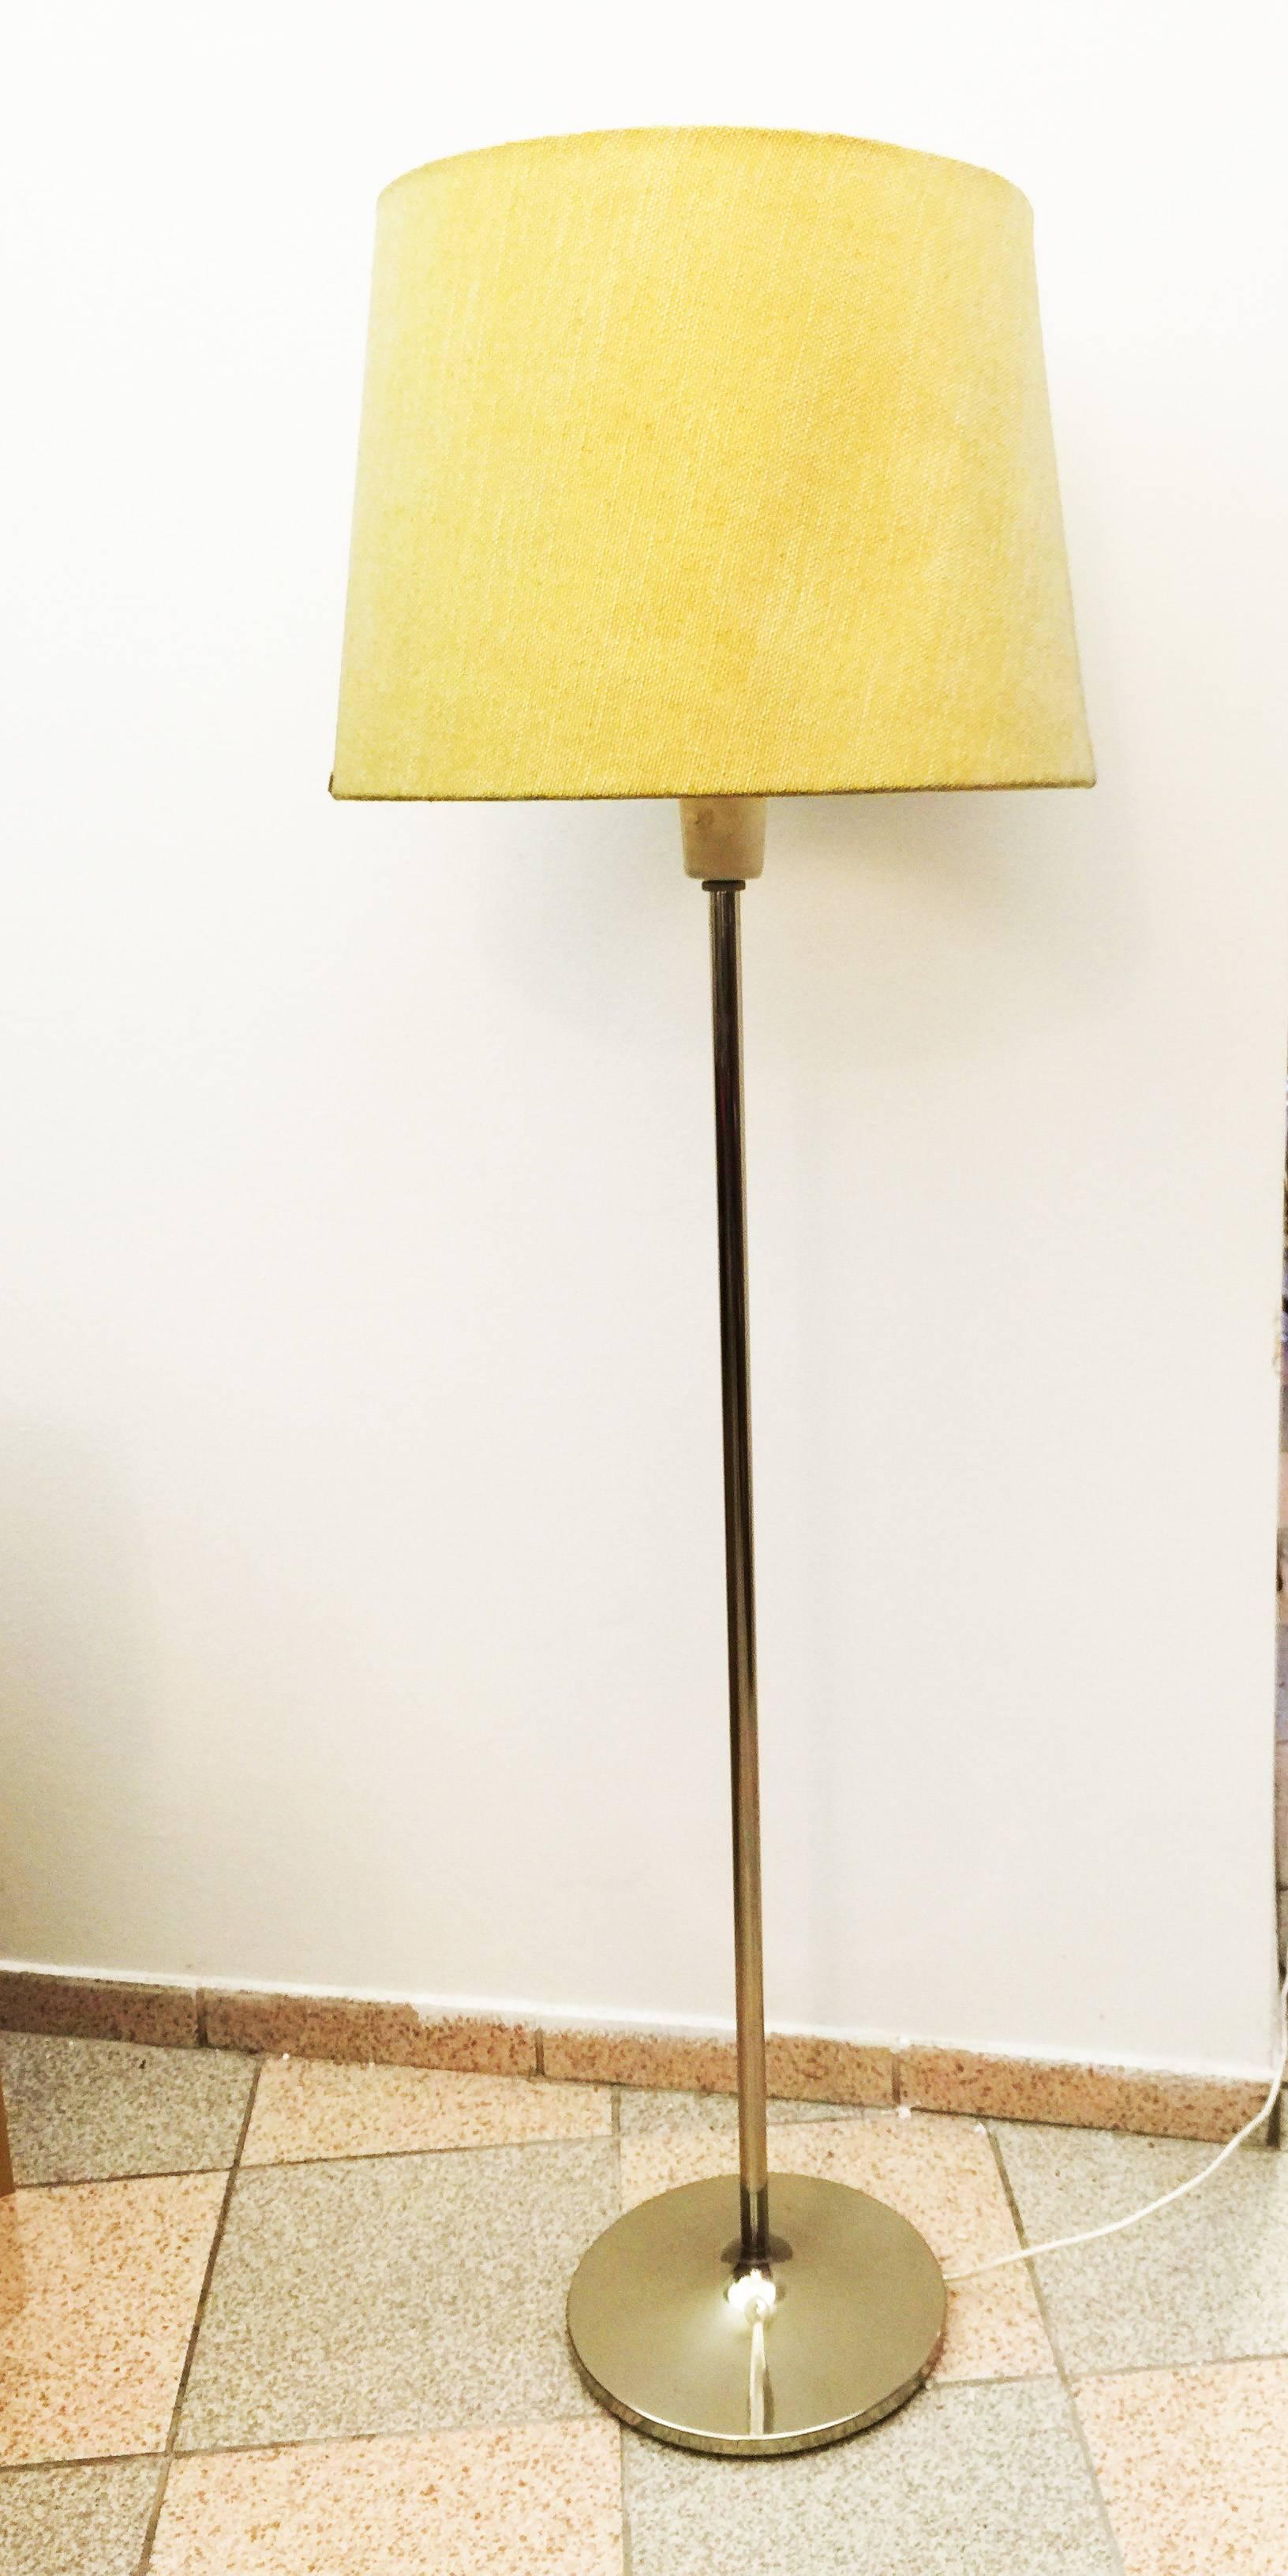 Mid-20th Century Adjustable J.T. Kalmar Floor Lamp For Sale